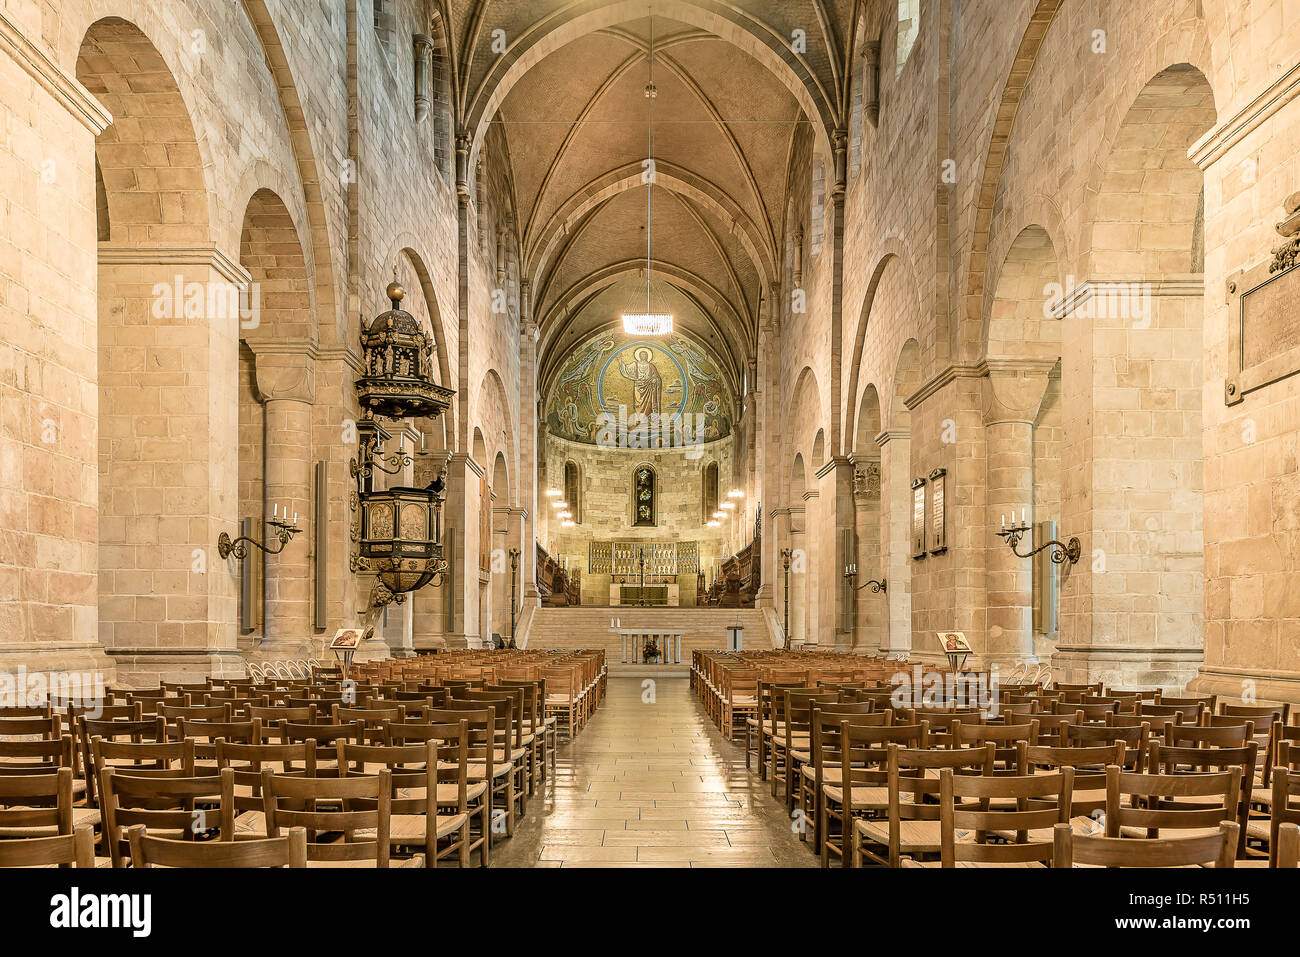 Interno della cattedrale di Lund con la navata, altare e il mosaico di luce soffusa, Lund, Svezia, 16 novembre 2018 Foto Stock